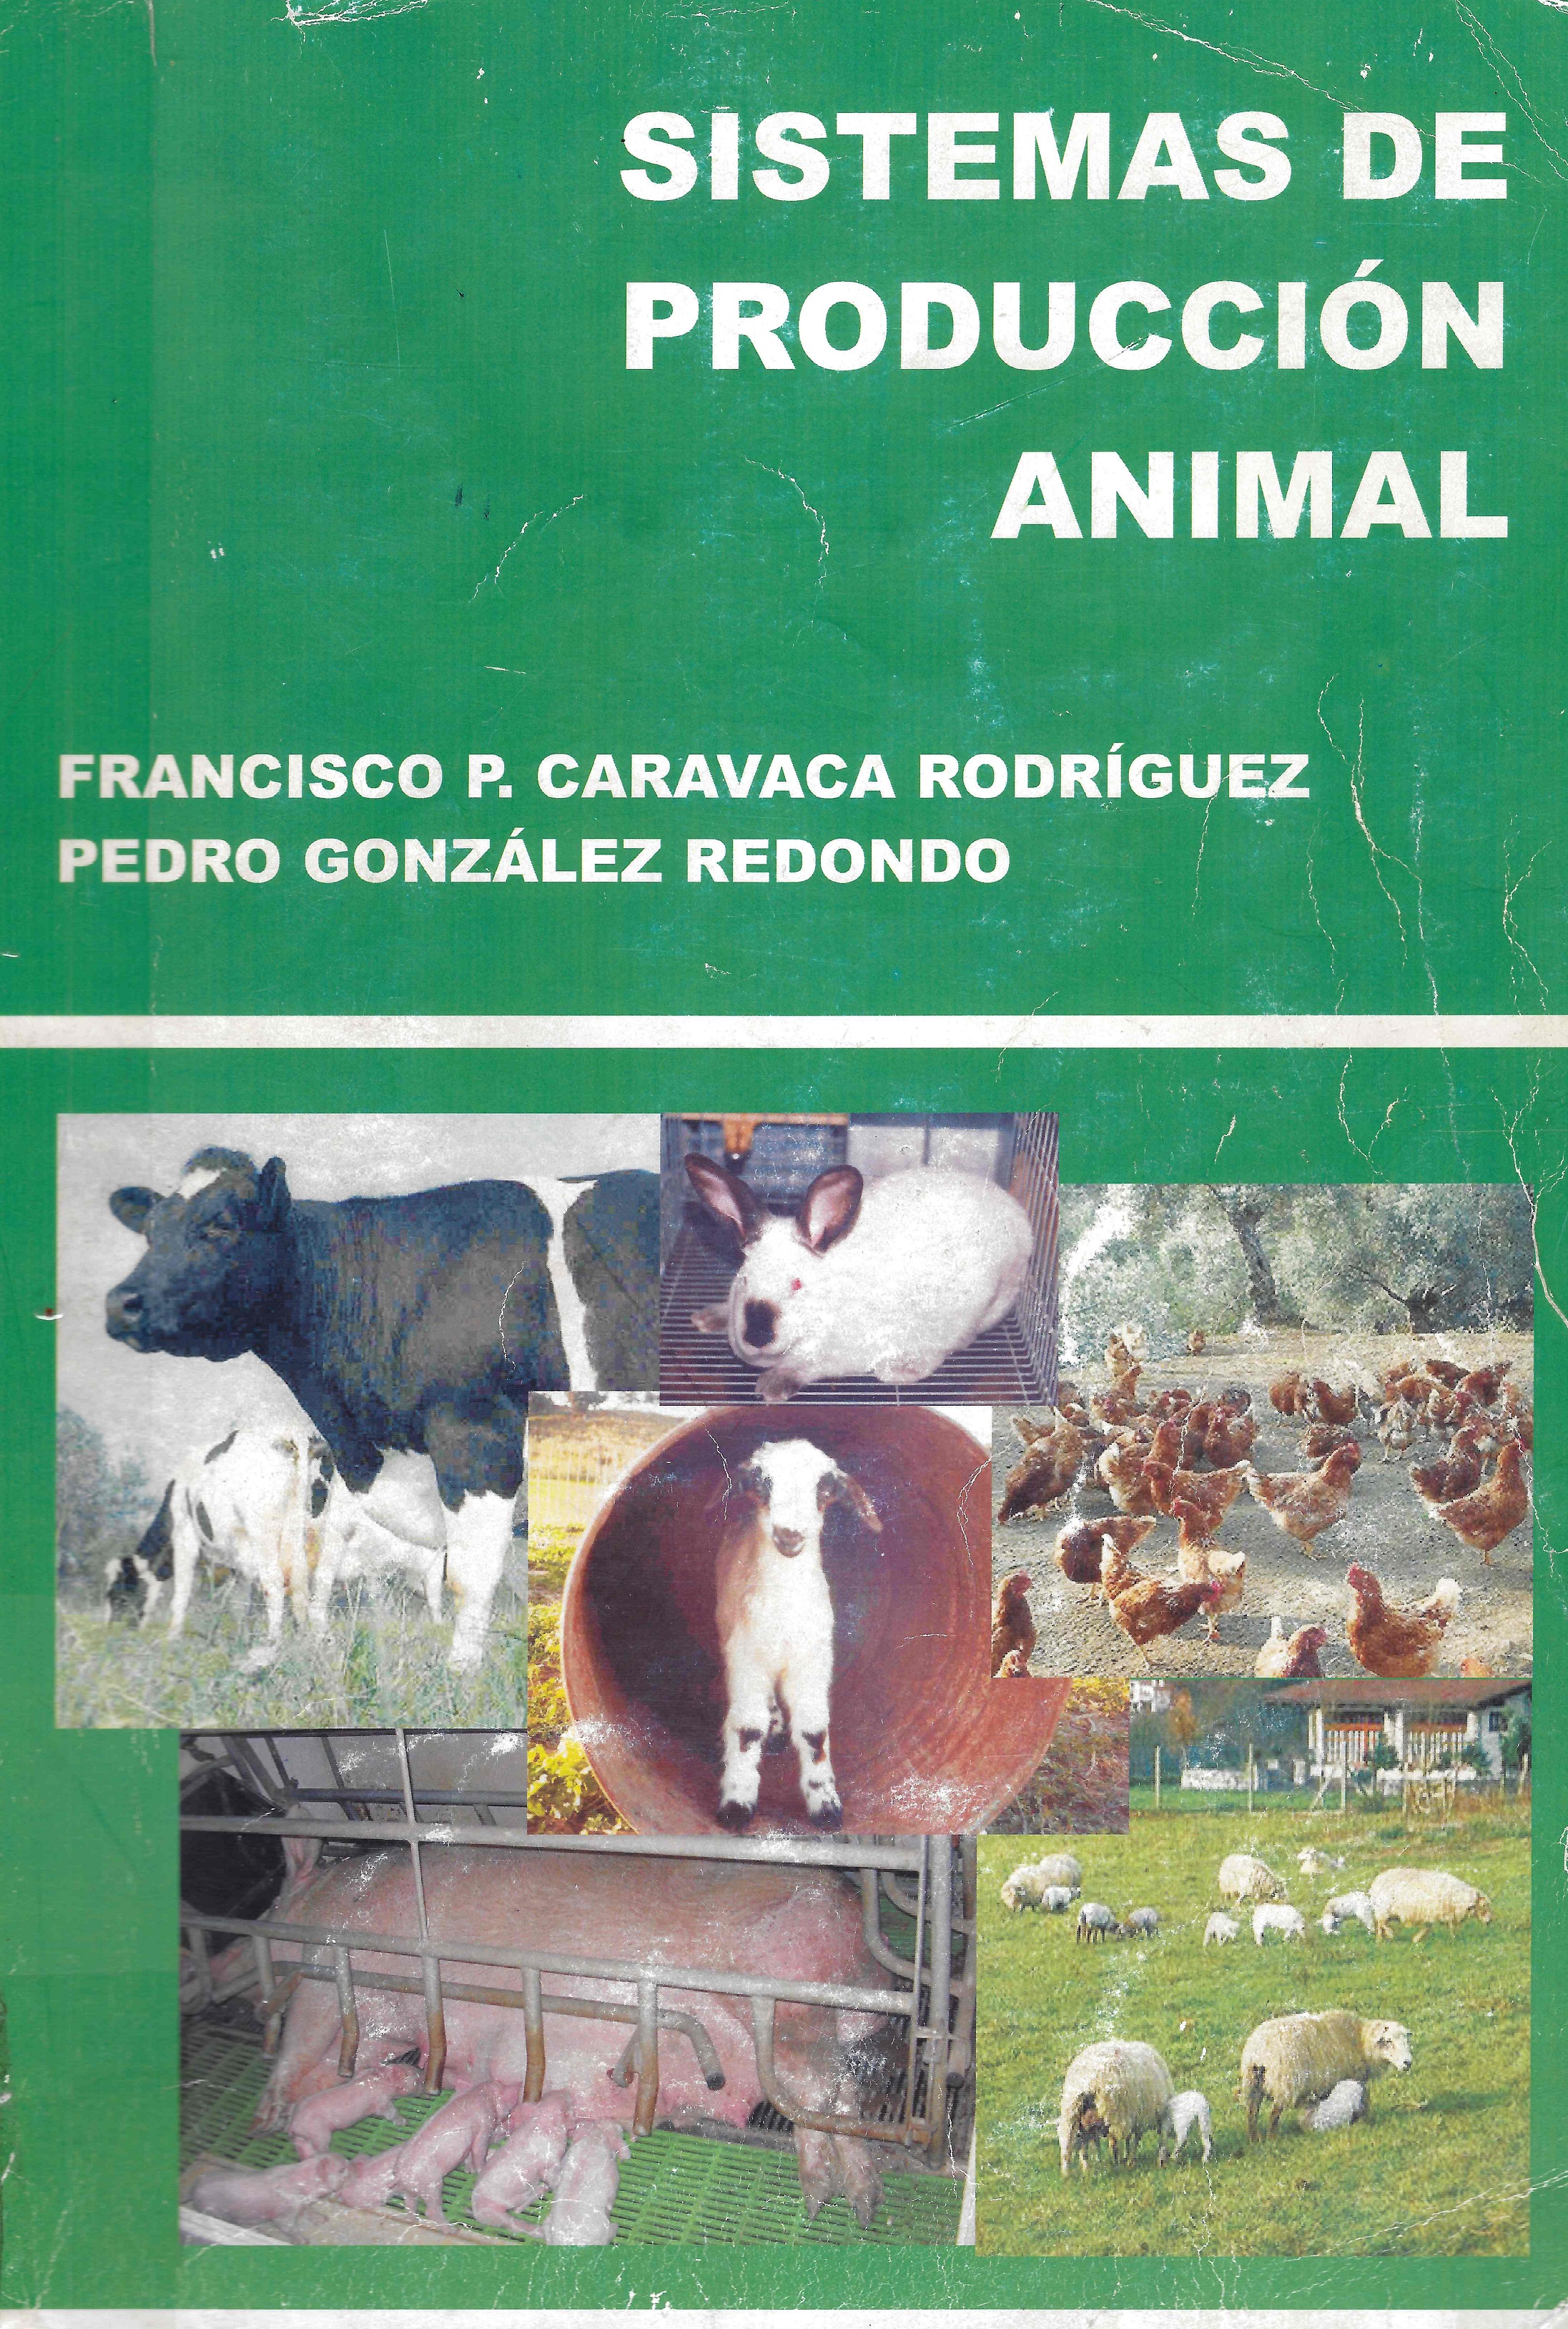 Imagen de portada del libro Sistemas de producción animal